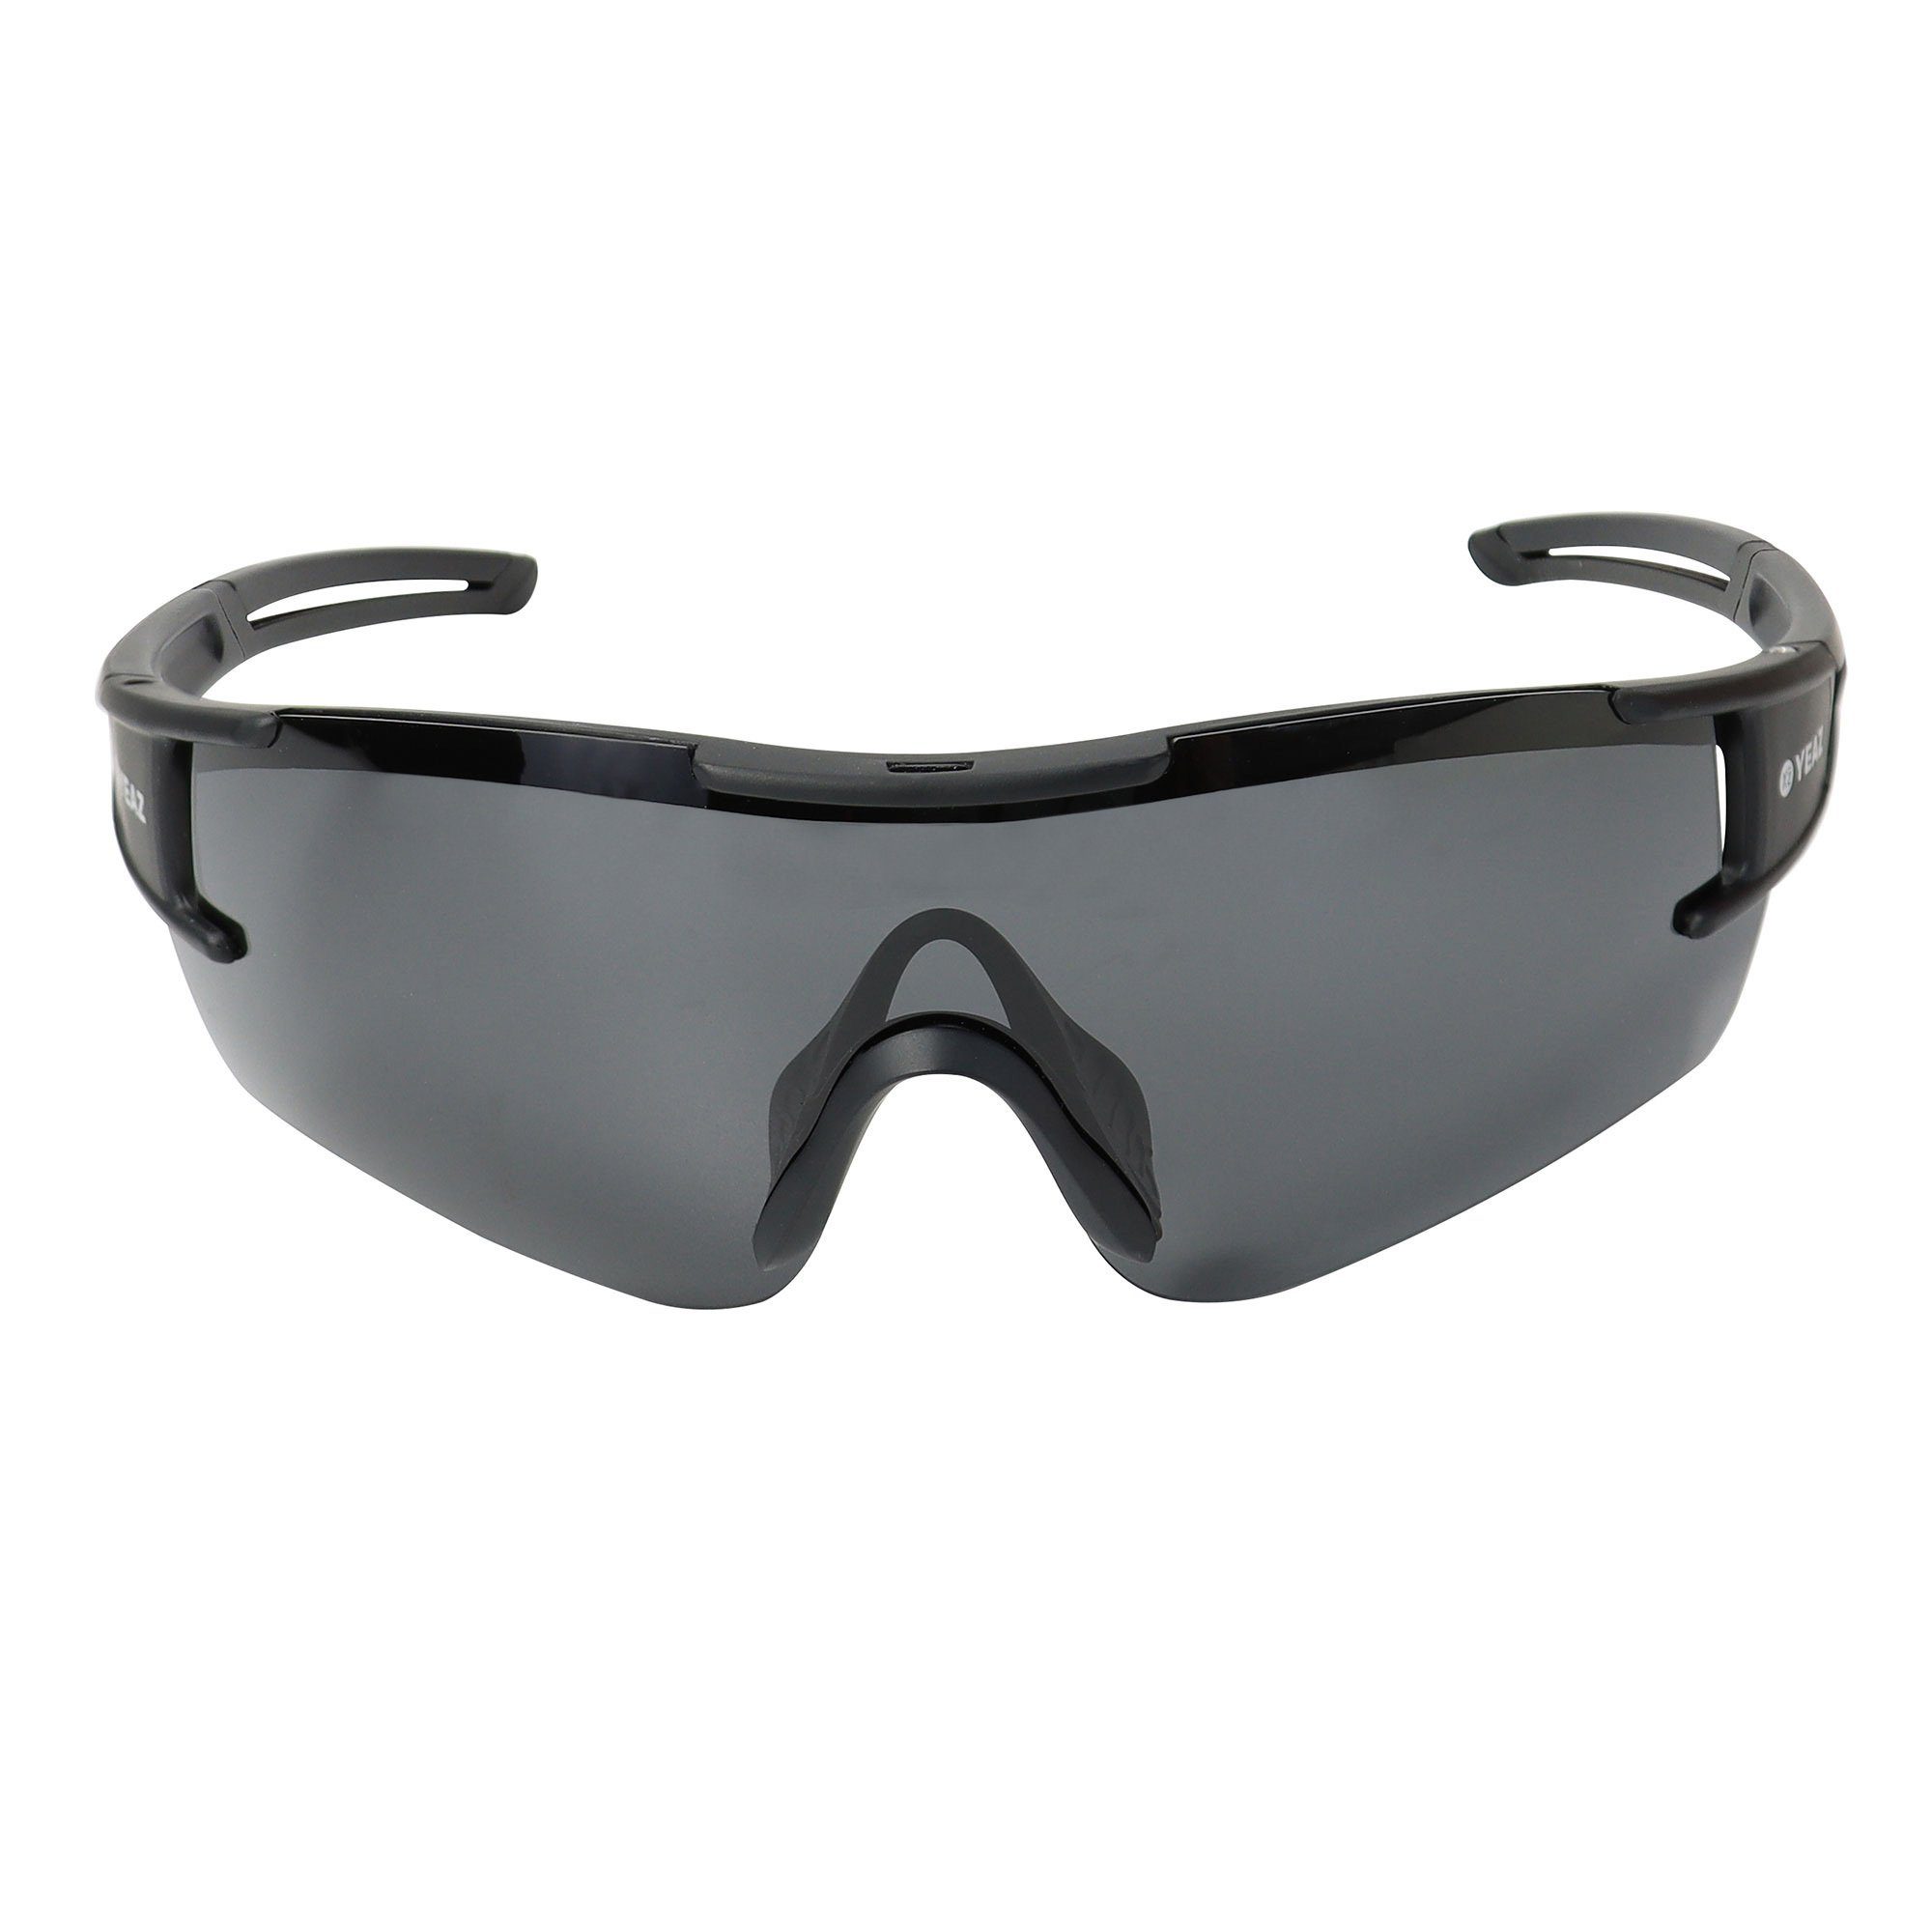 bei Sicht YEAZ Guter SUNBLOW Sportbrille Schutz black/grey, sport-sonnenbrille optimierter